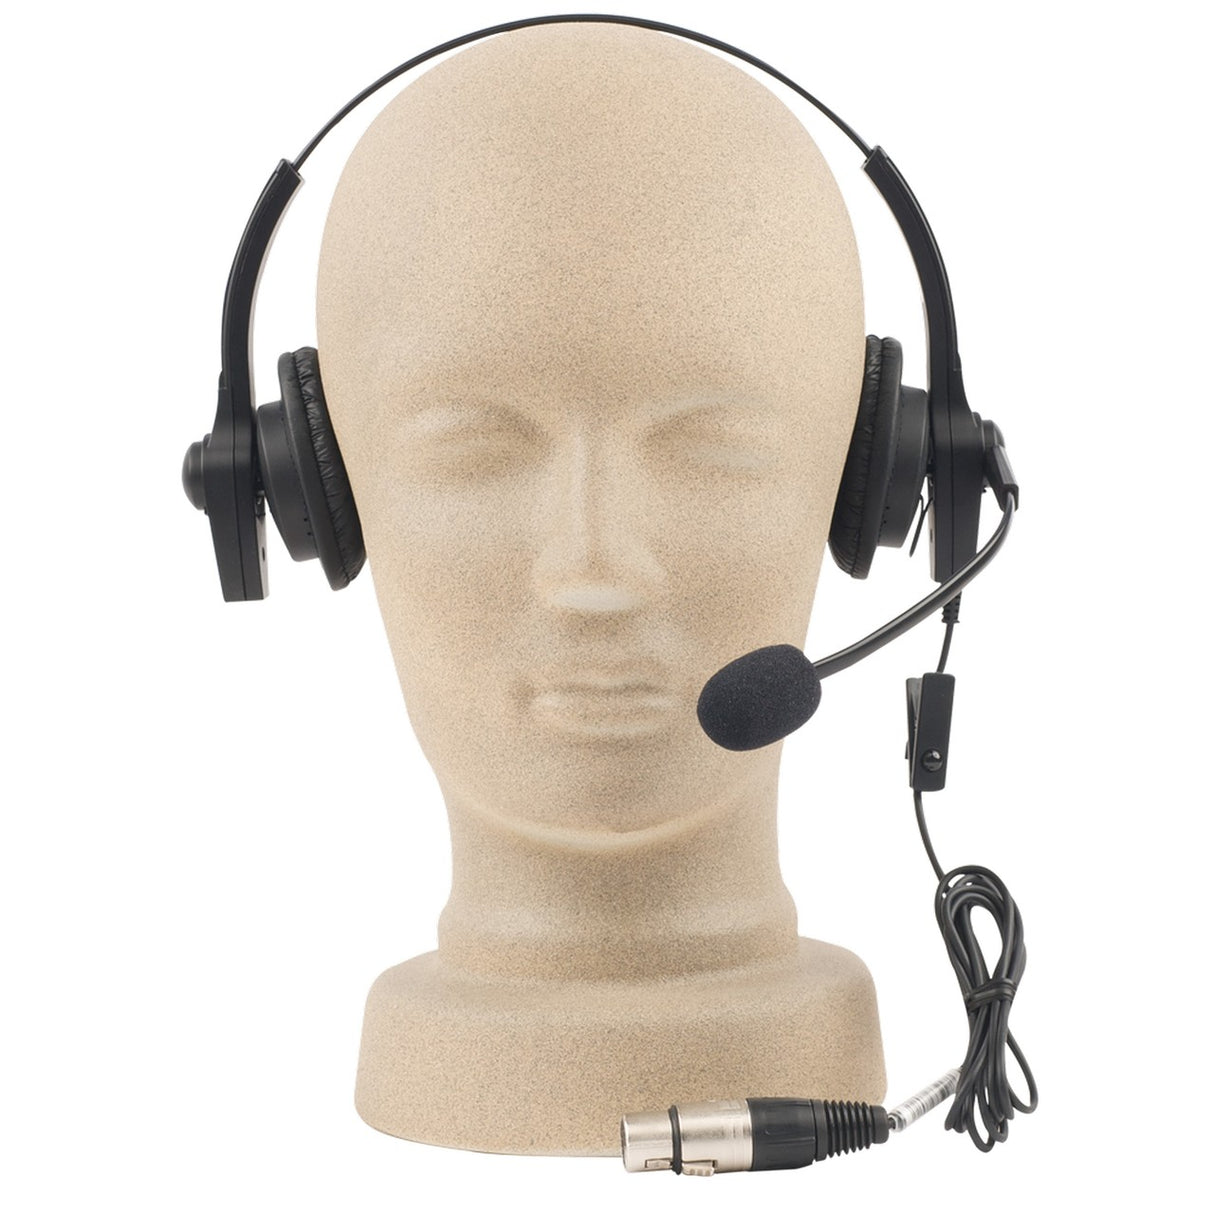 Anchor Audio H-2000LT Lightweight Intercom Headset